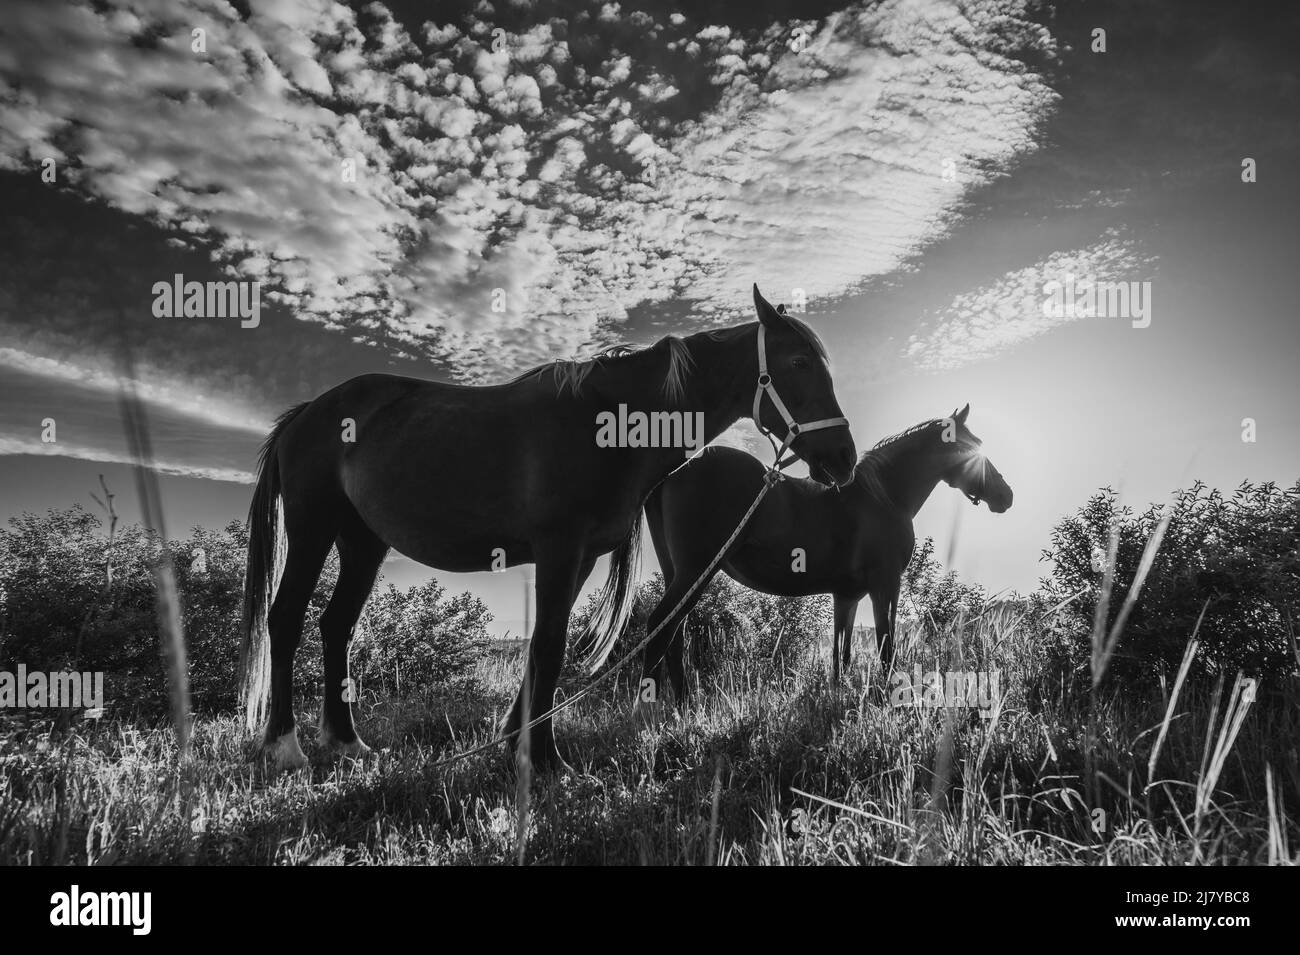 Magnifiques chevaux de pâturage sur la prairie au printemps, ciel magnifique avec de jolis nuages originaux au-dessus des couleurs noir et blanc. Banque D'Images